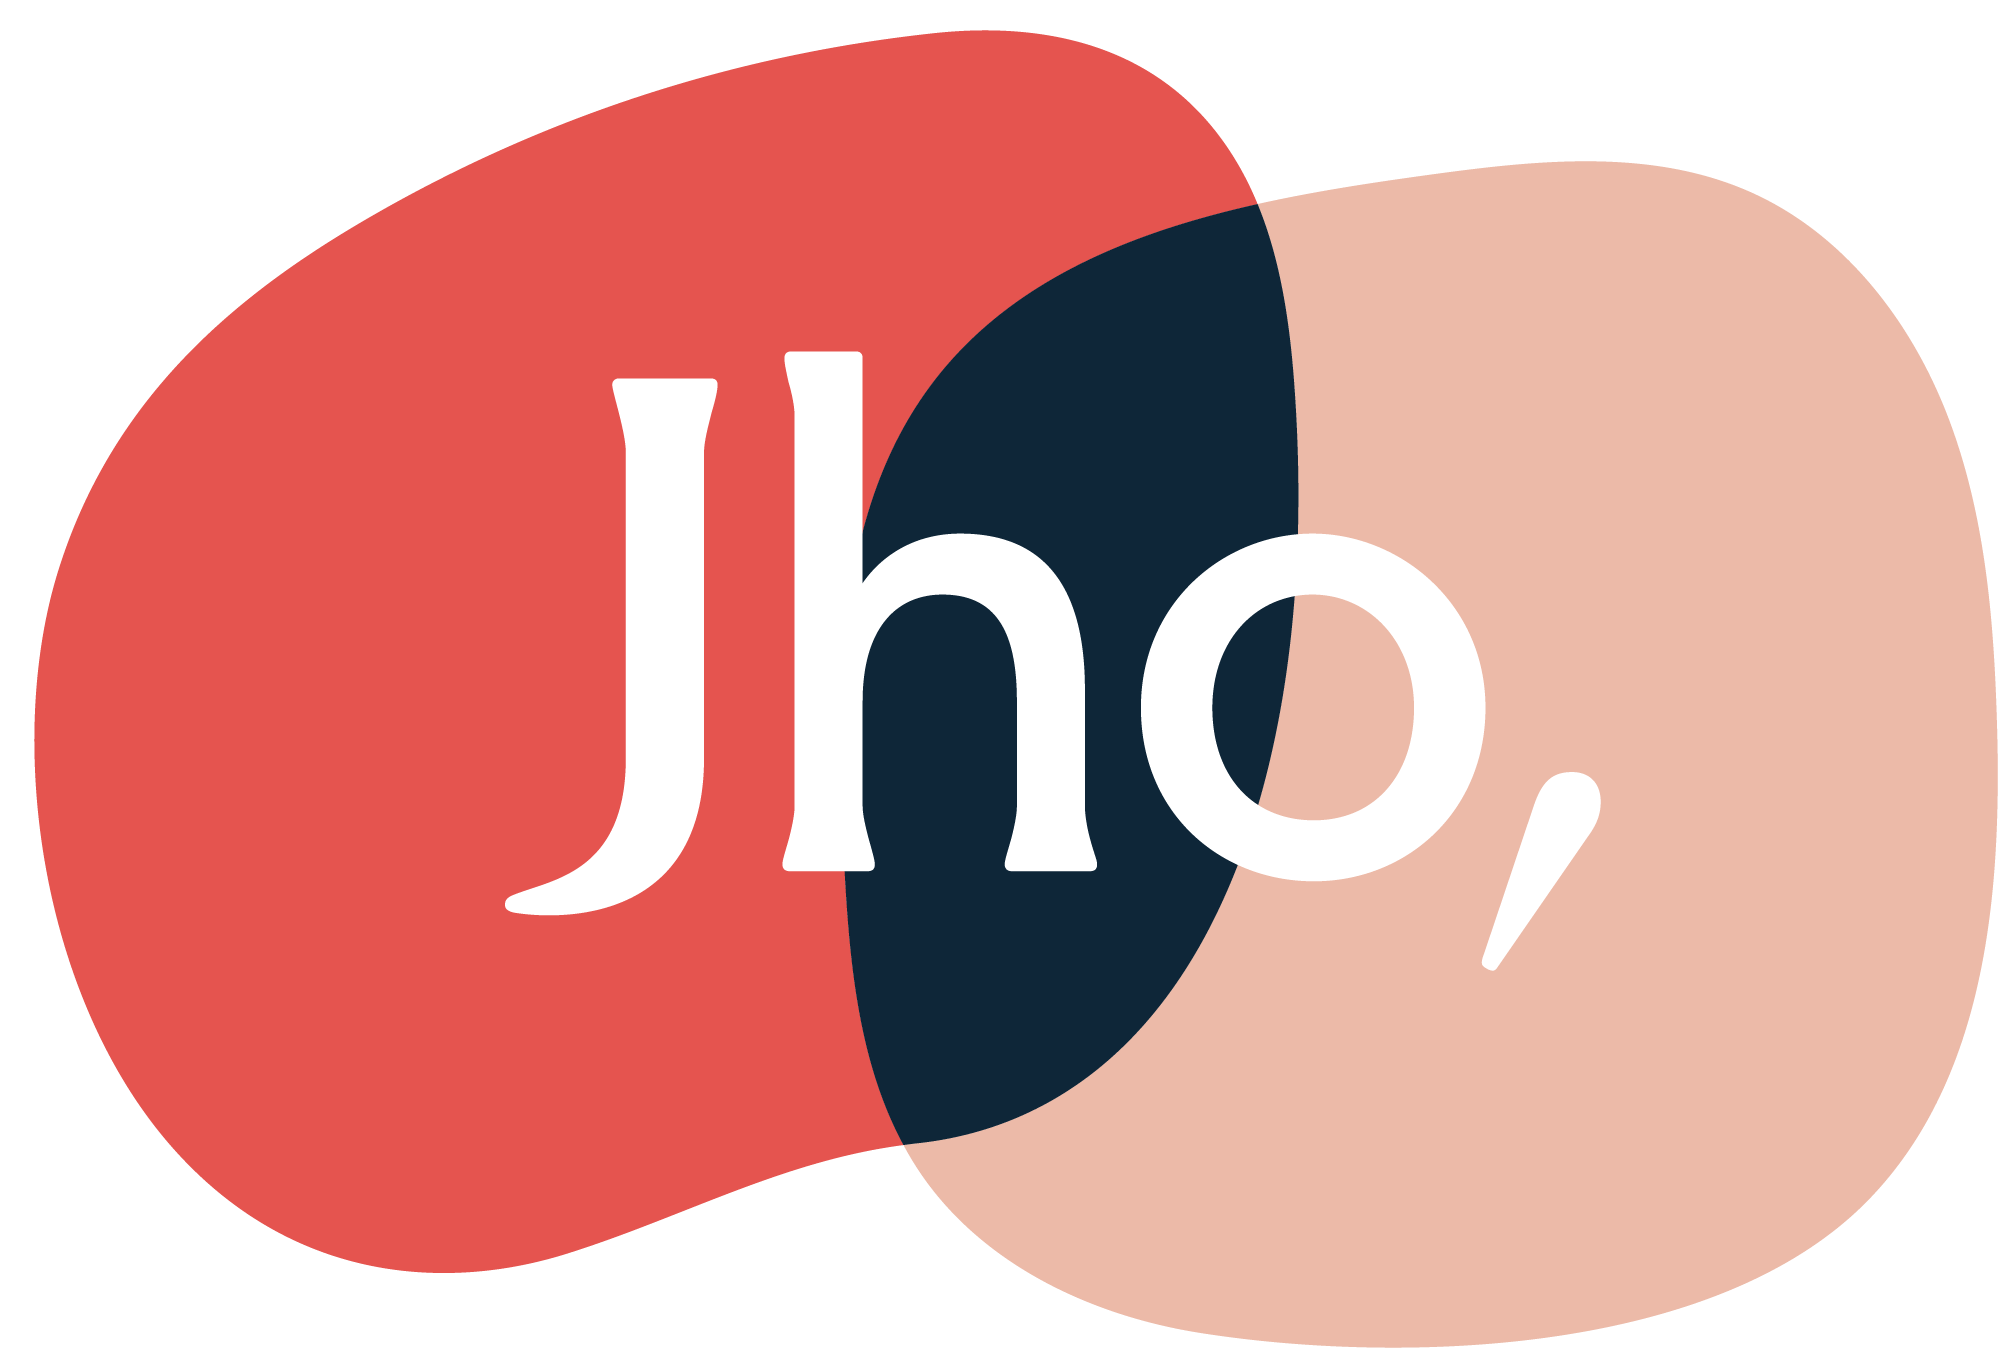 JHO